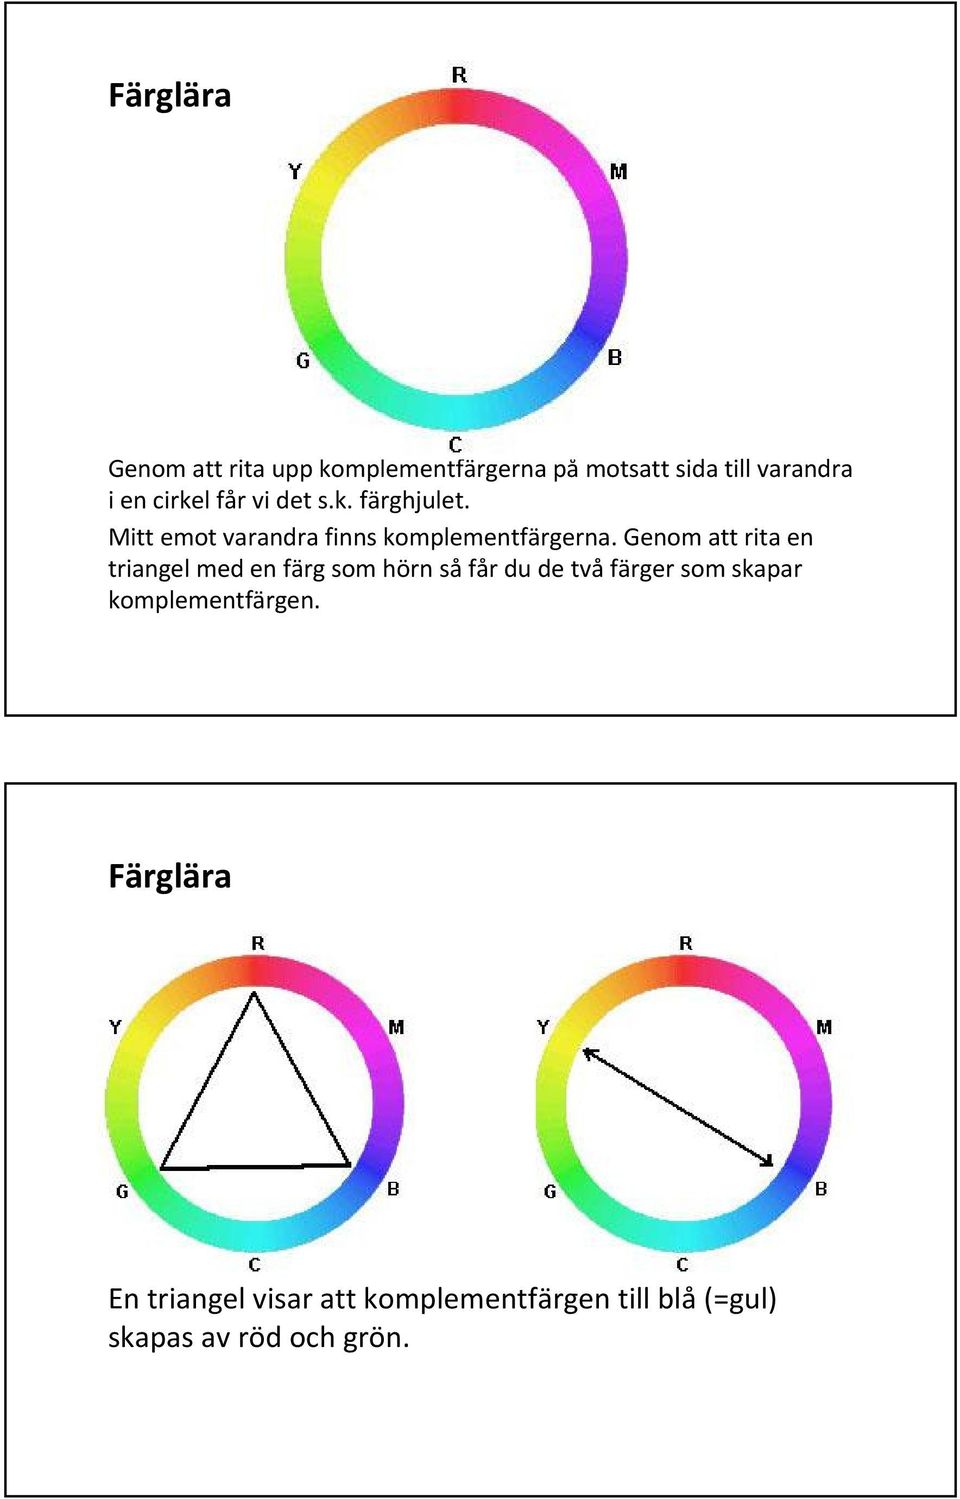 Genom att rita en triangel med en färg som hörn så får du de två färger som skapar